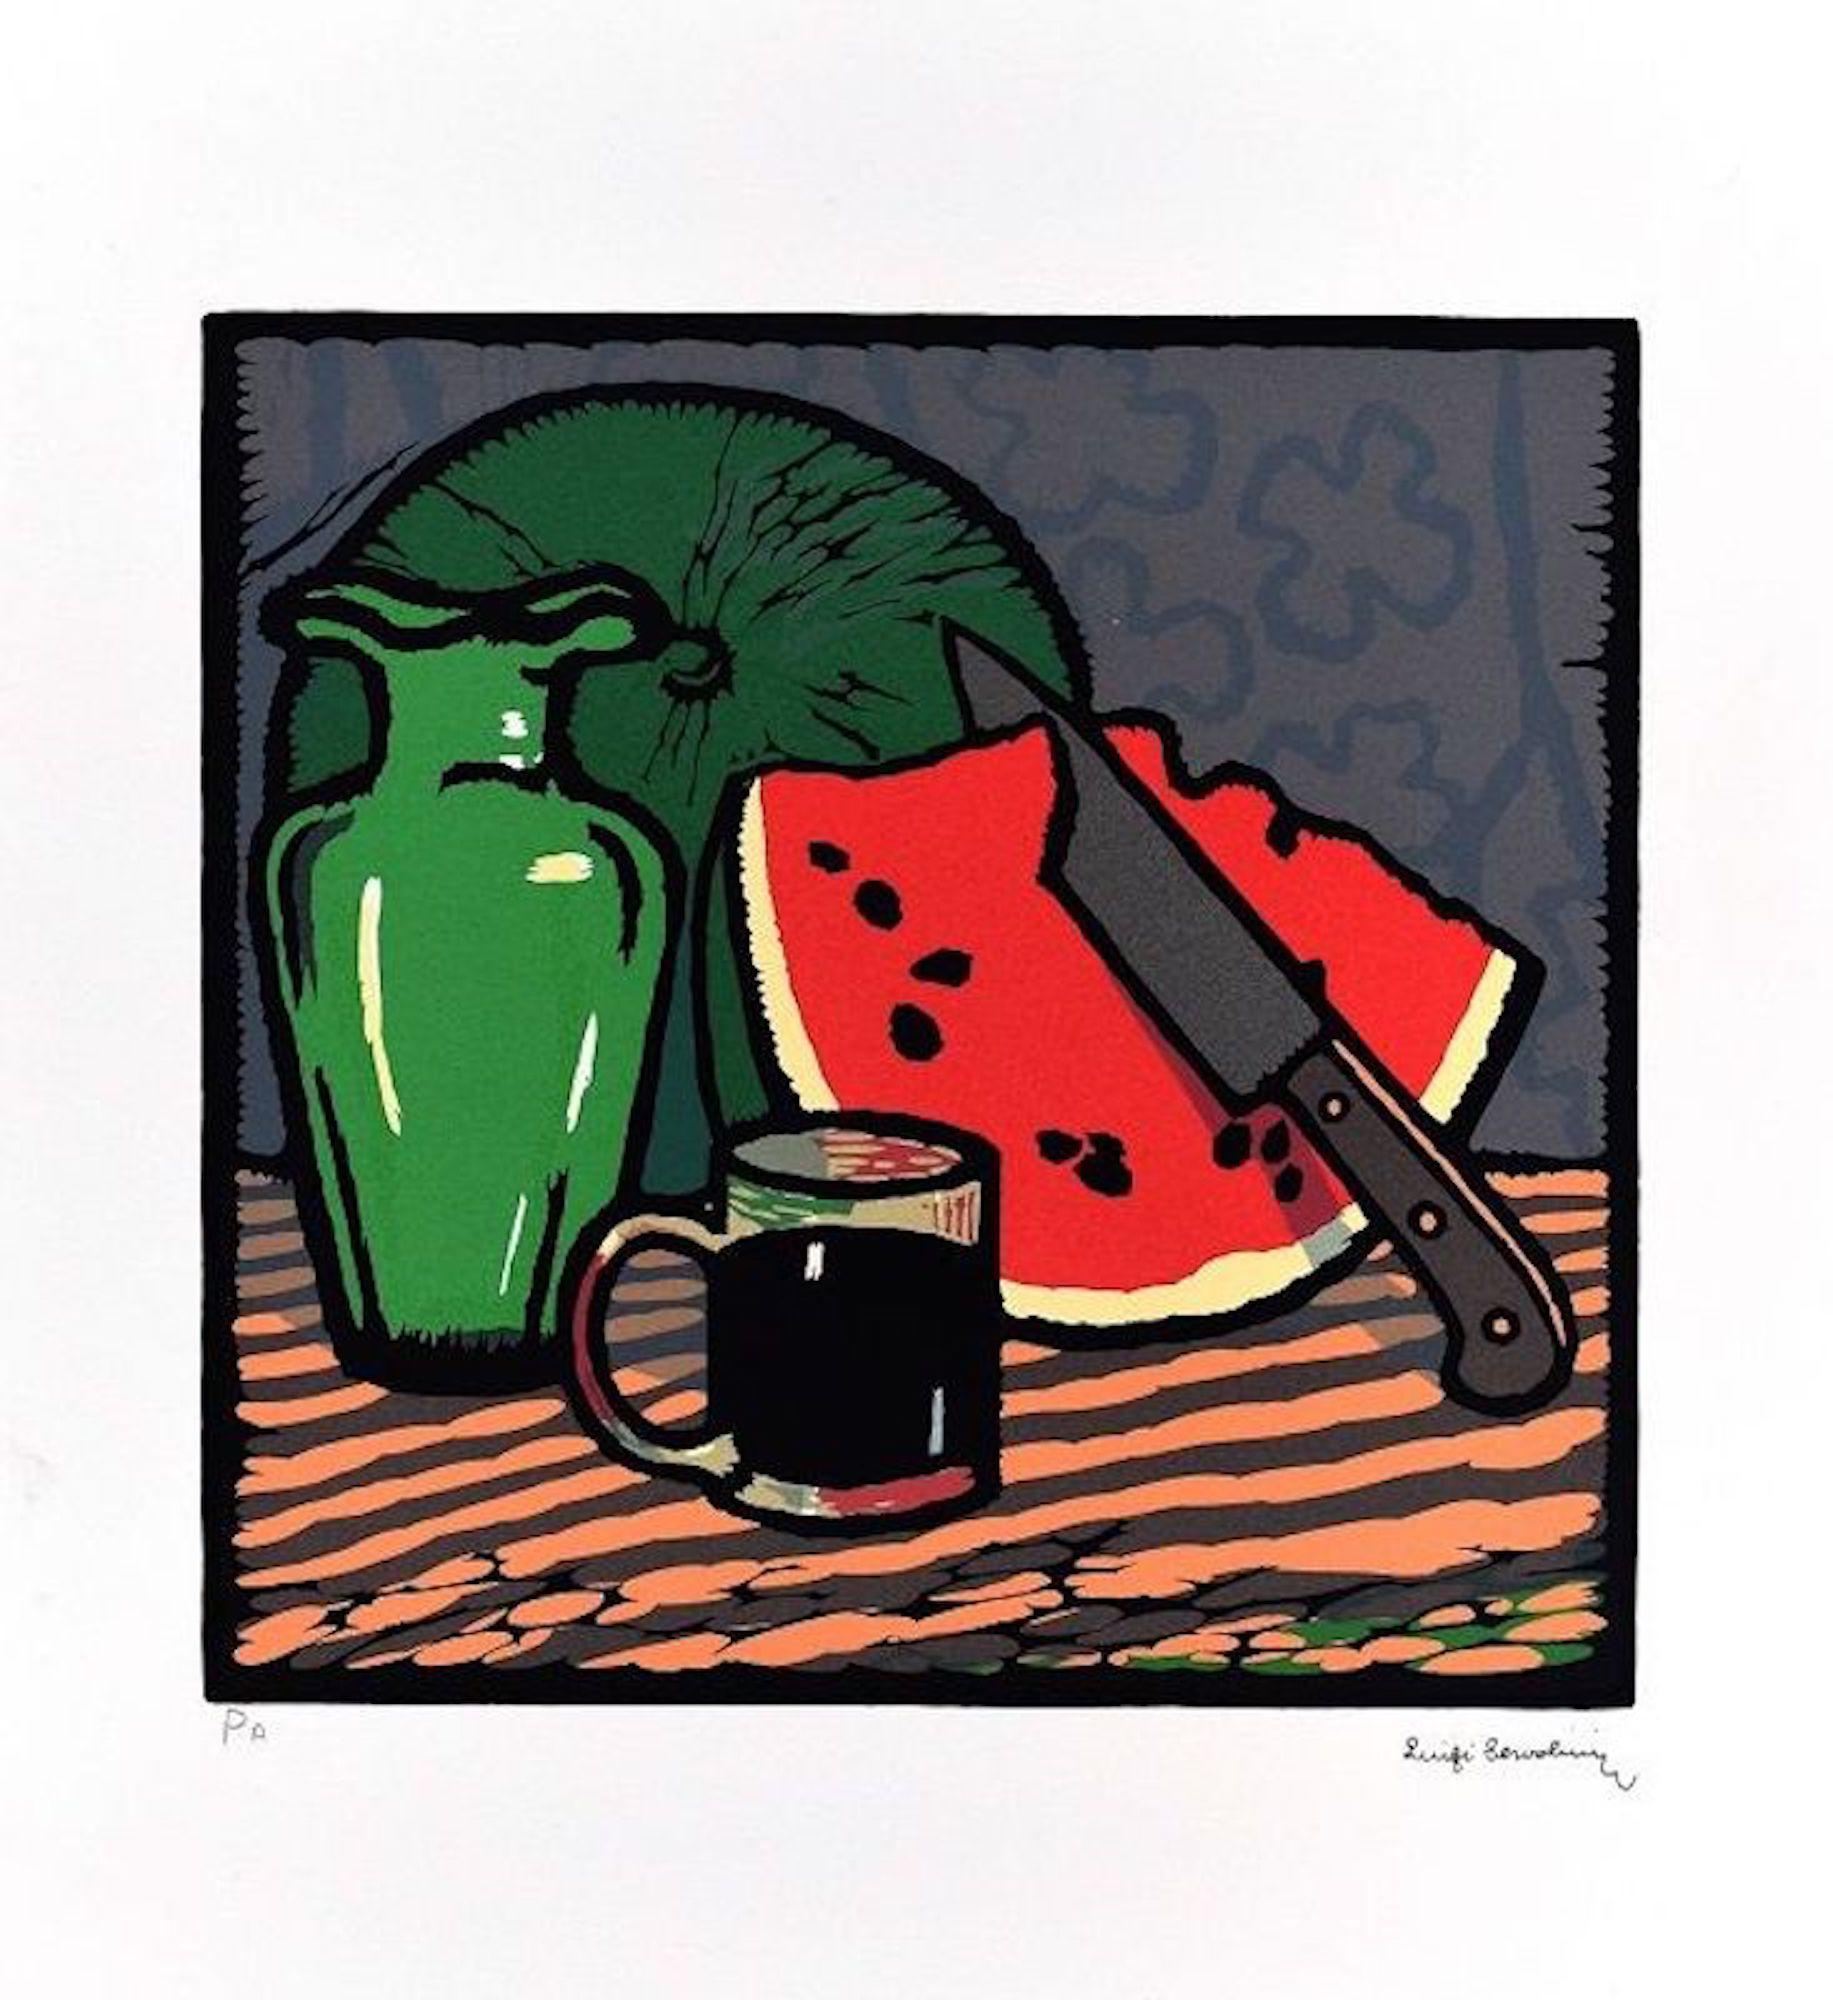 Luigi Servolini Still-Life Print - Still Life with Watermelon - Woodcut Print by L. Servolini - 1977